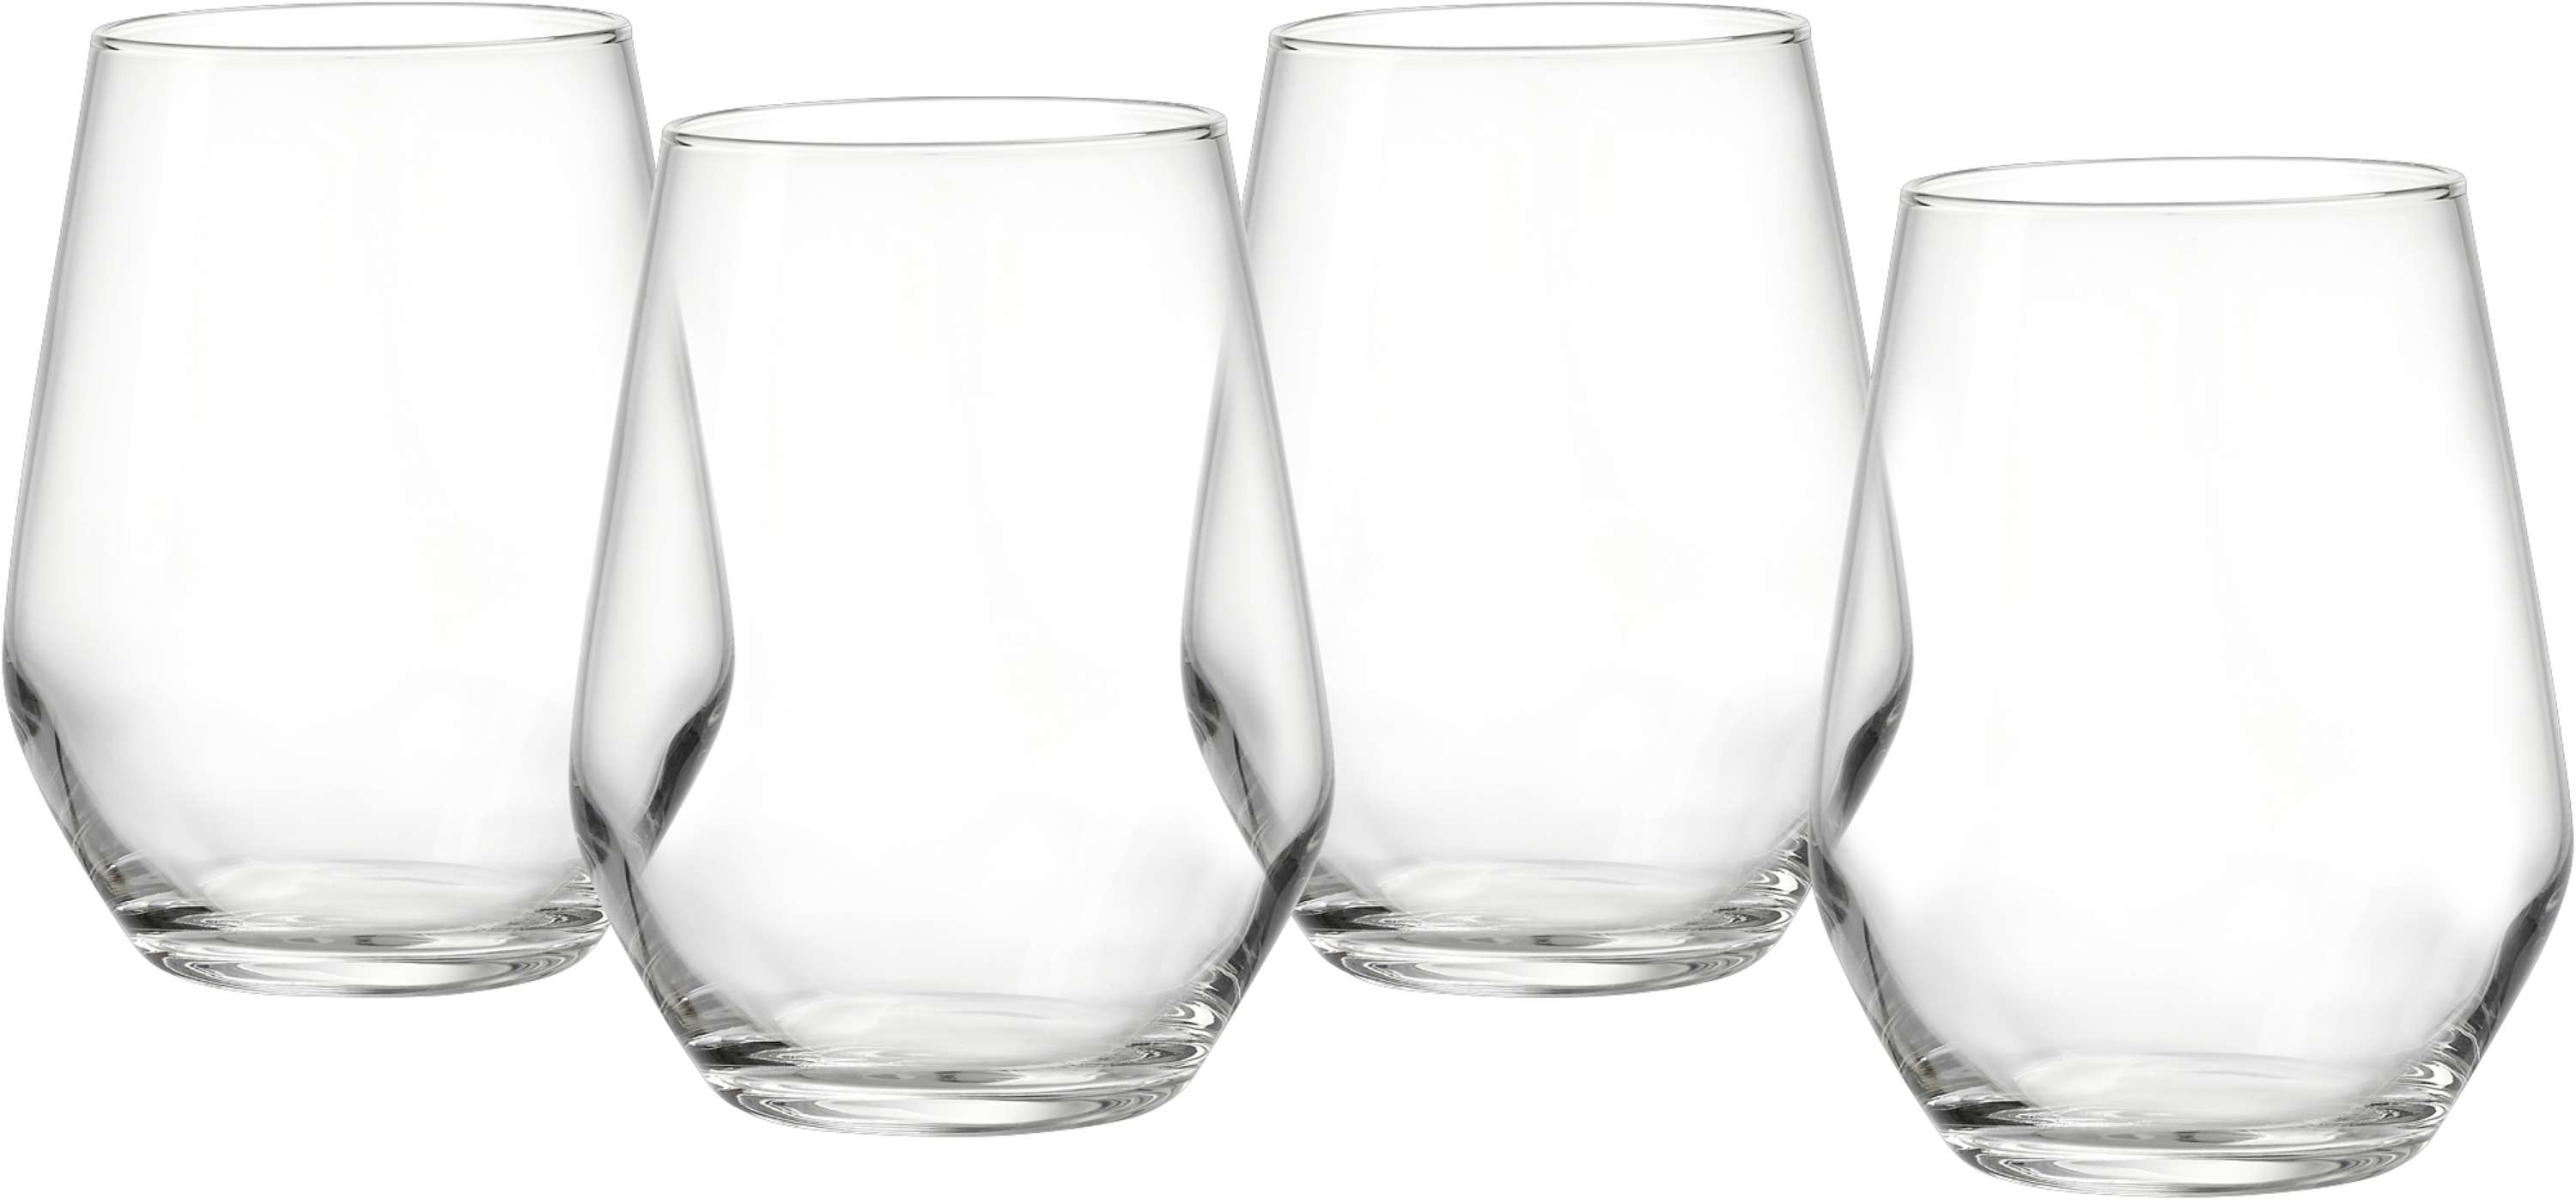 Ritzenhoff & Breker Longdrinkglas-Set Mambo, 4-teilig